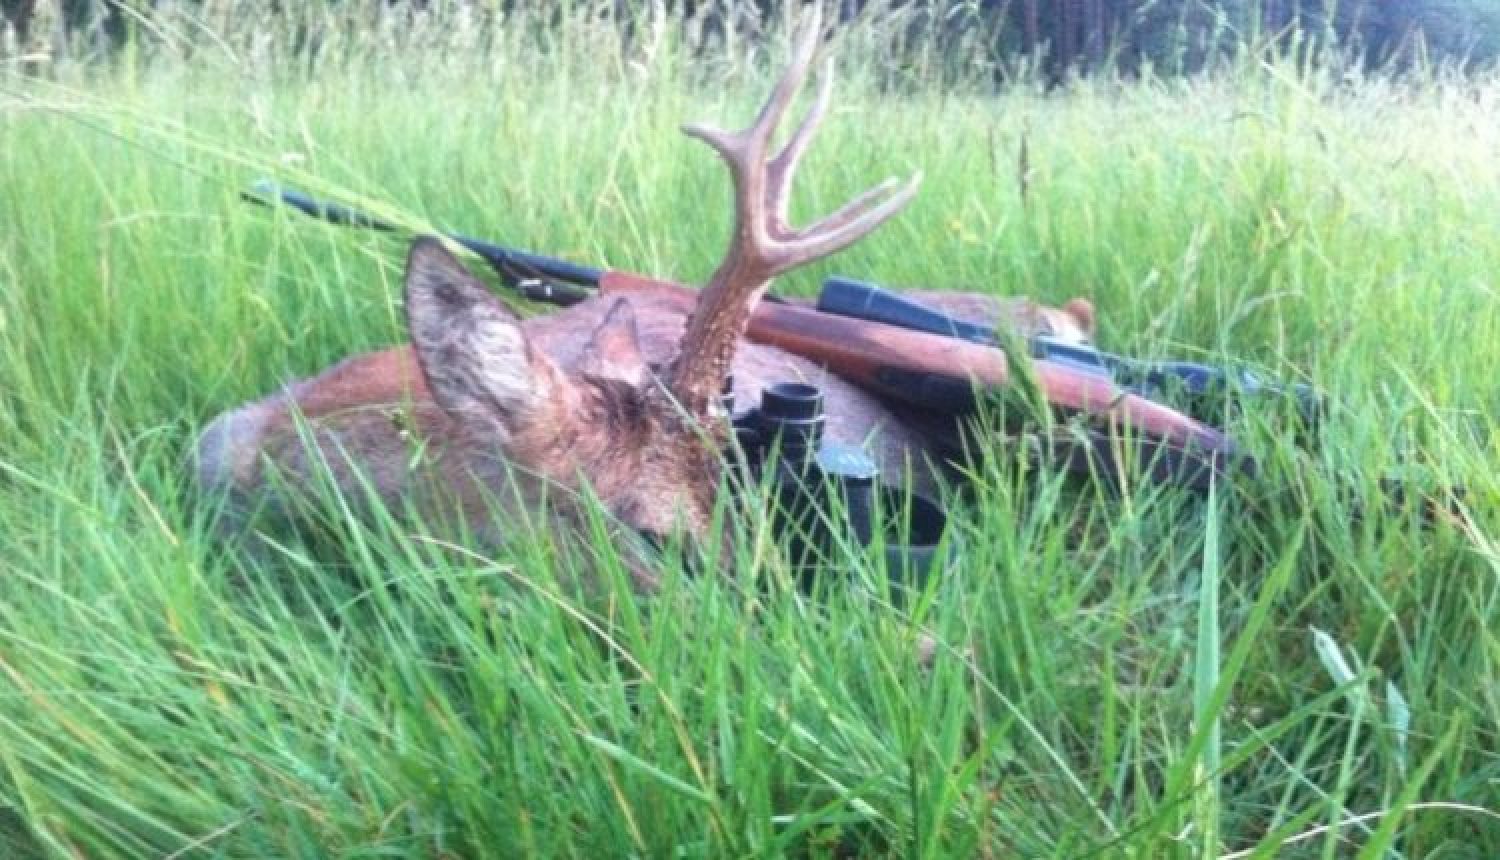 Fragen aus der Jägerprüfung zur Jagdausübung nach dem Schuss